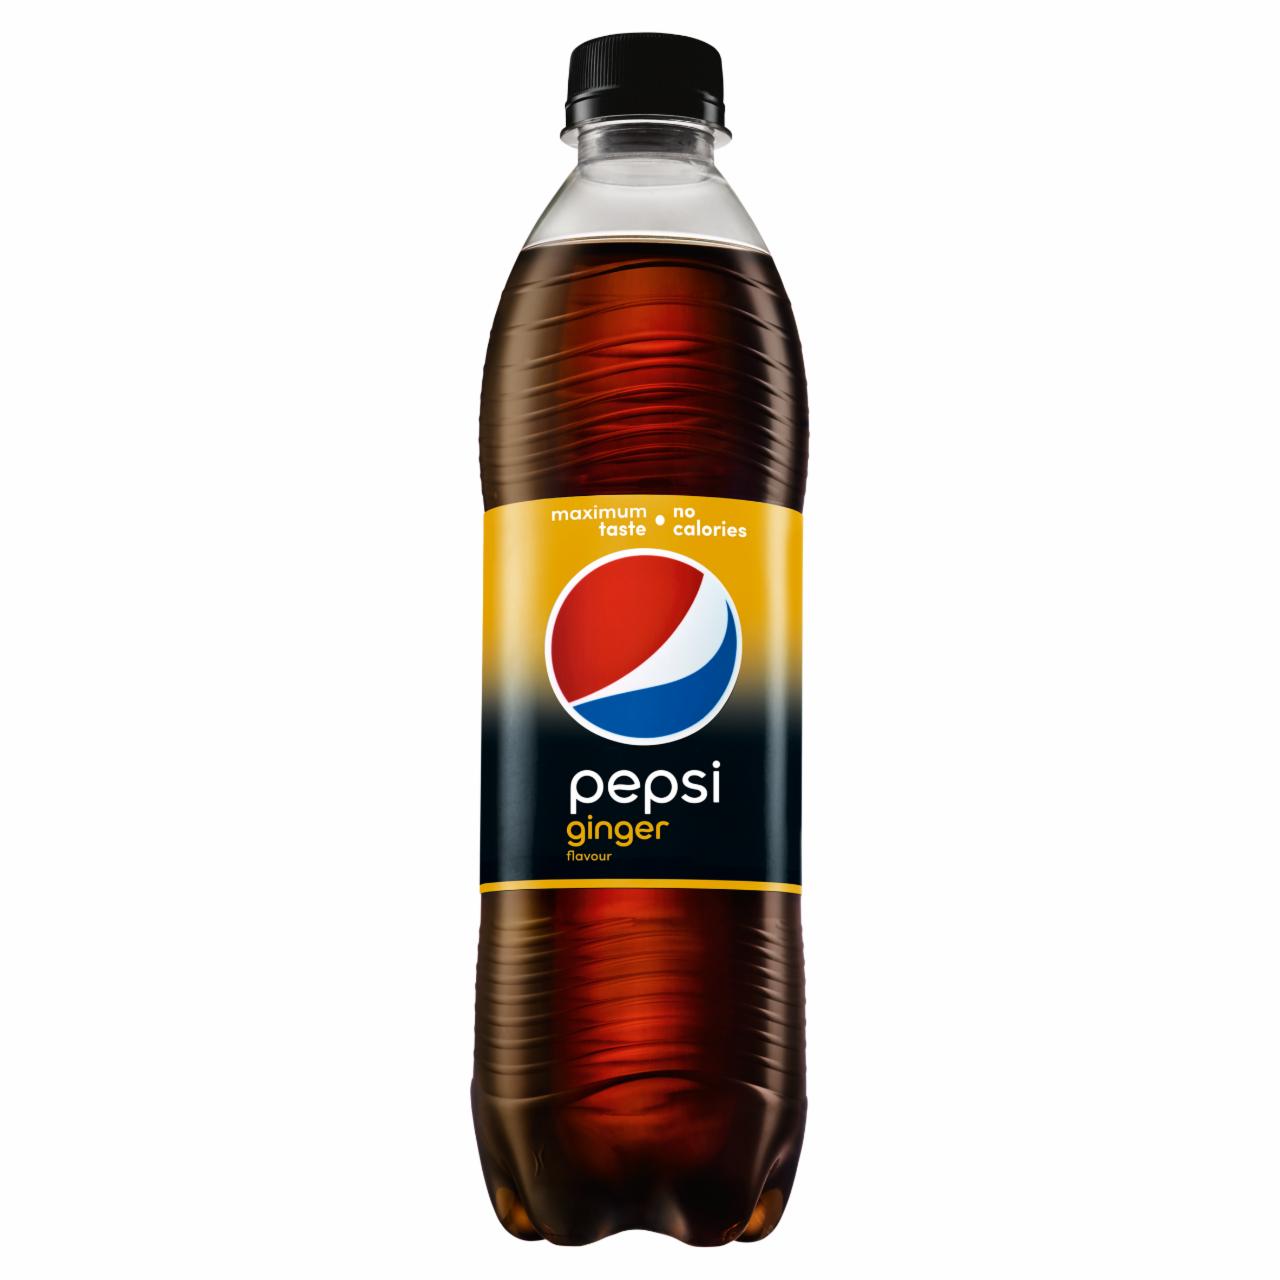 Zdjęcia - Pepsi Ginger Flavour Napój gazowany 500 ml